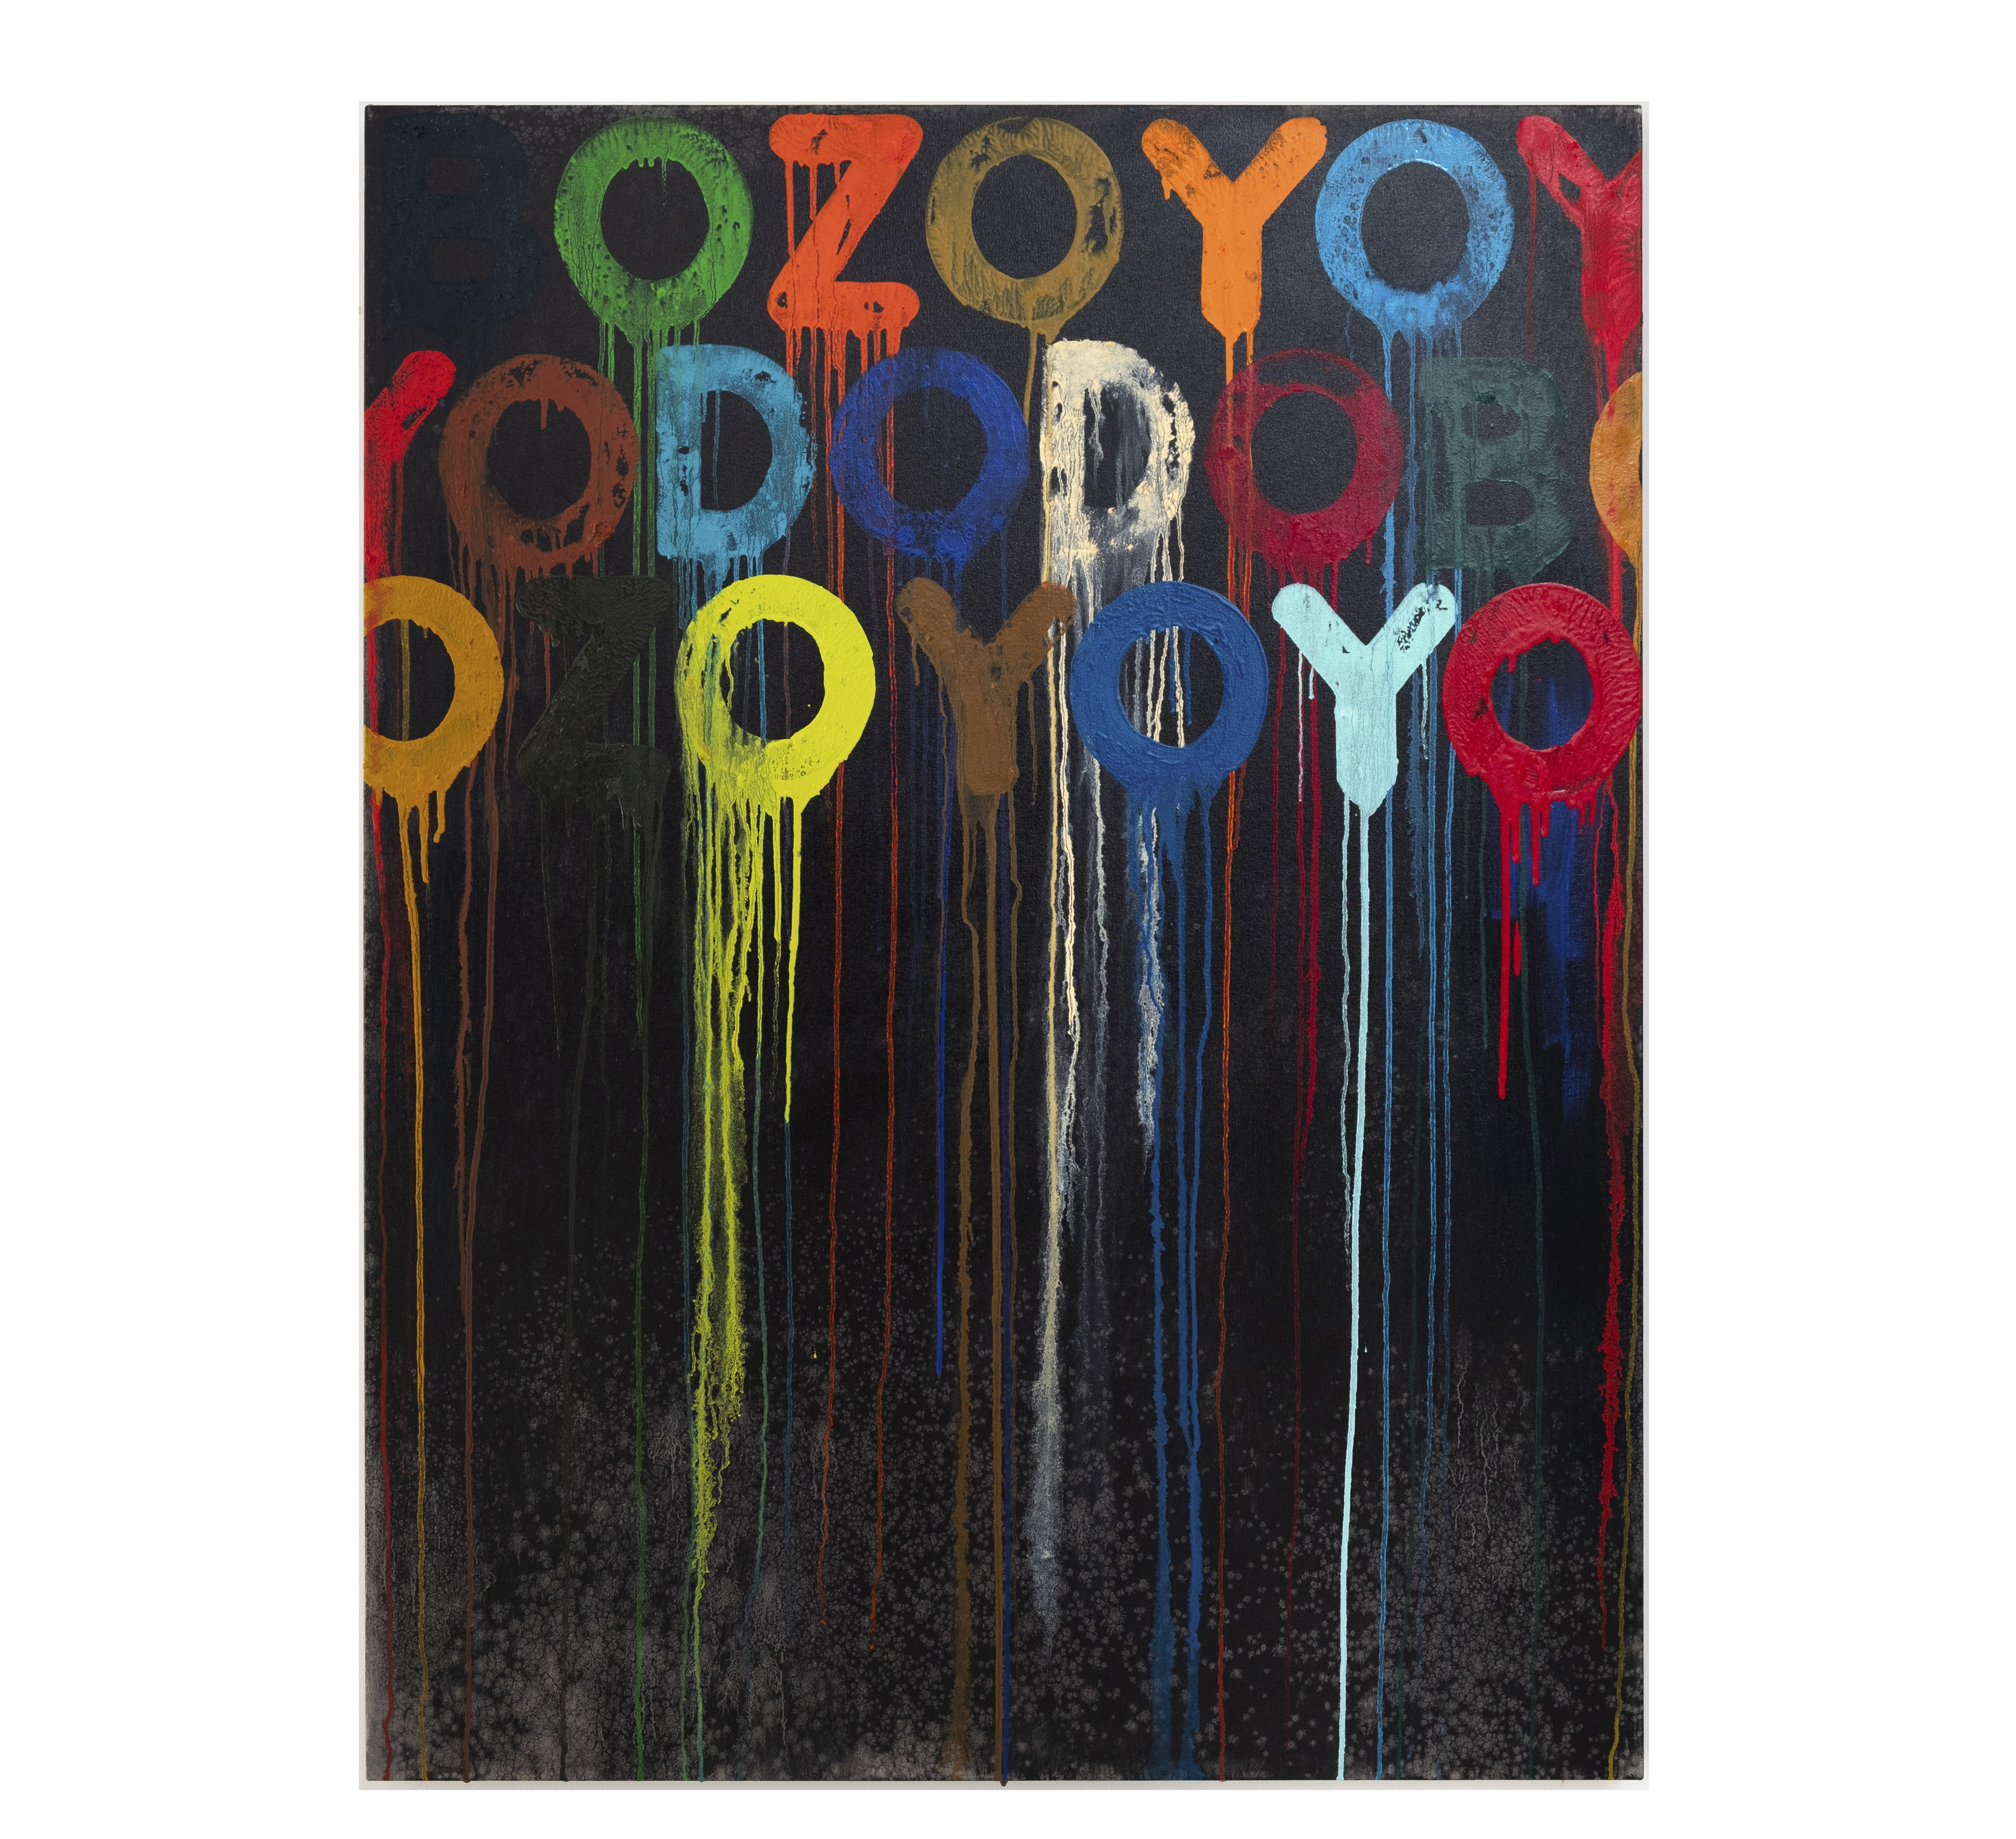 MEL BOCHNER

&nbsp;

BOZO
2020
oil on canvas
48 x 36 inches
(121.9 x 91.4 cm)
PF5942



INQUIRE